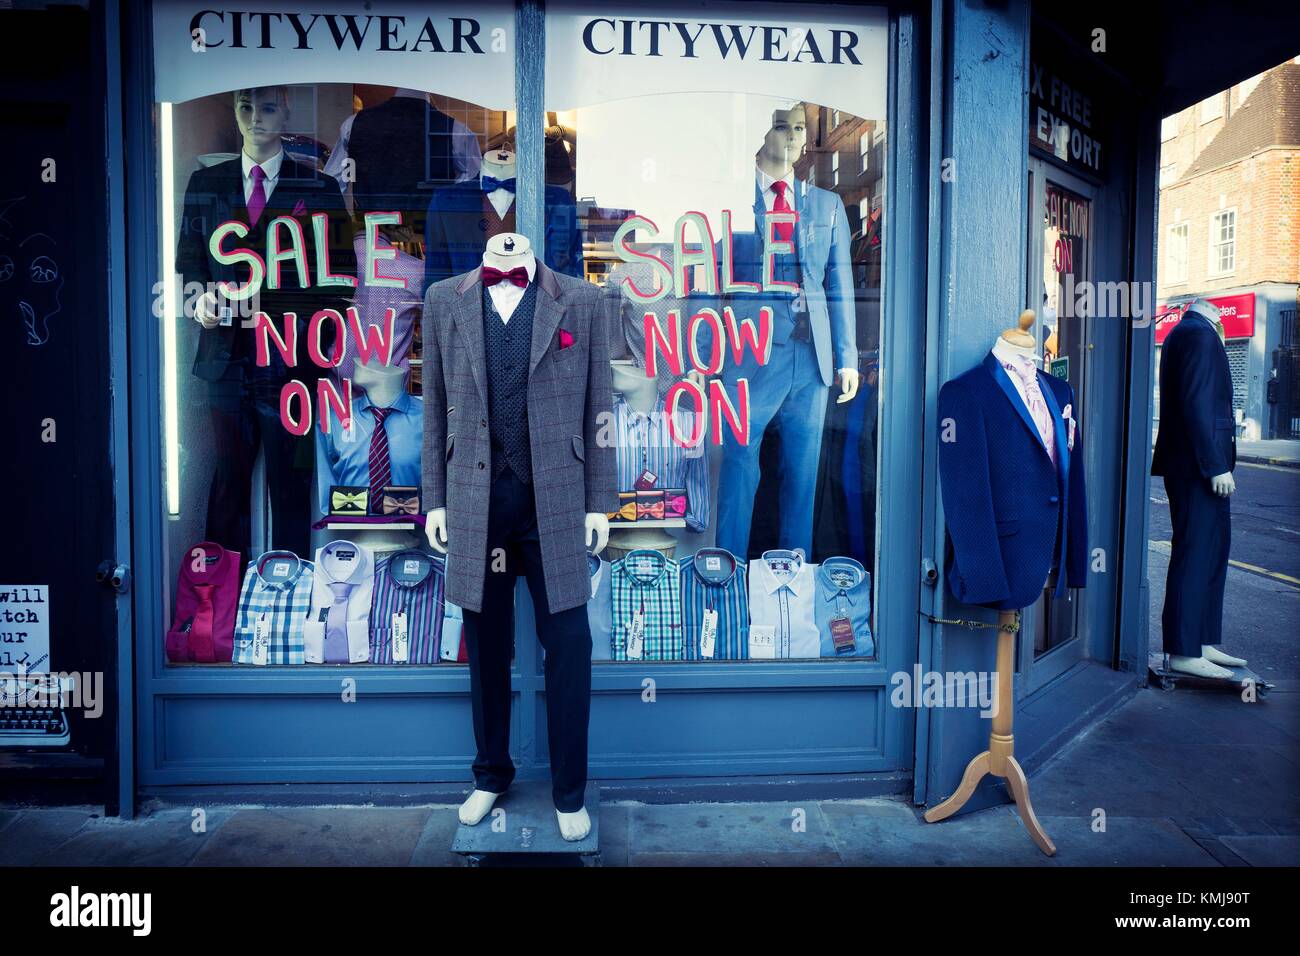 Fachada de una tienda de ropa con varios maniquíes vestidas con ropa de moda y un signo de Mercado Petticoat Lane, East End, Londres, Inglaterra Fotografía de Alamy